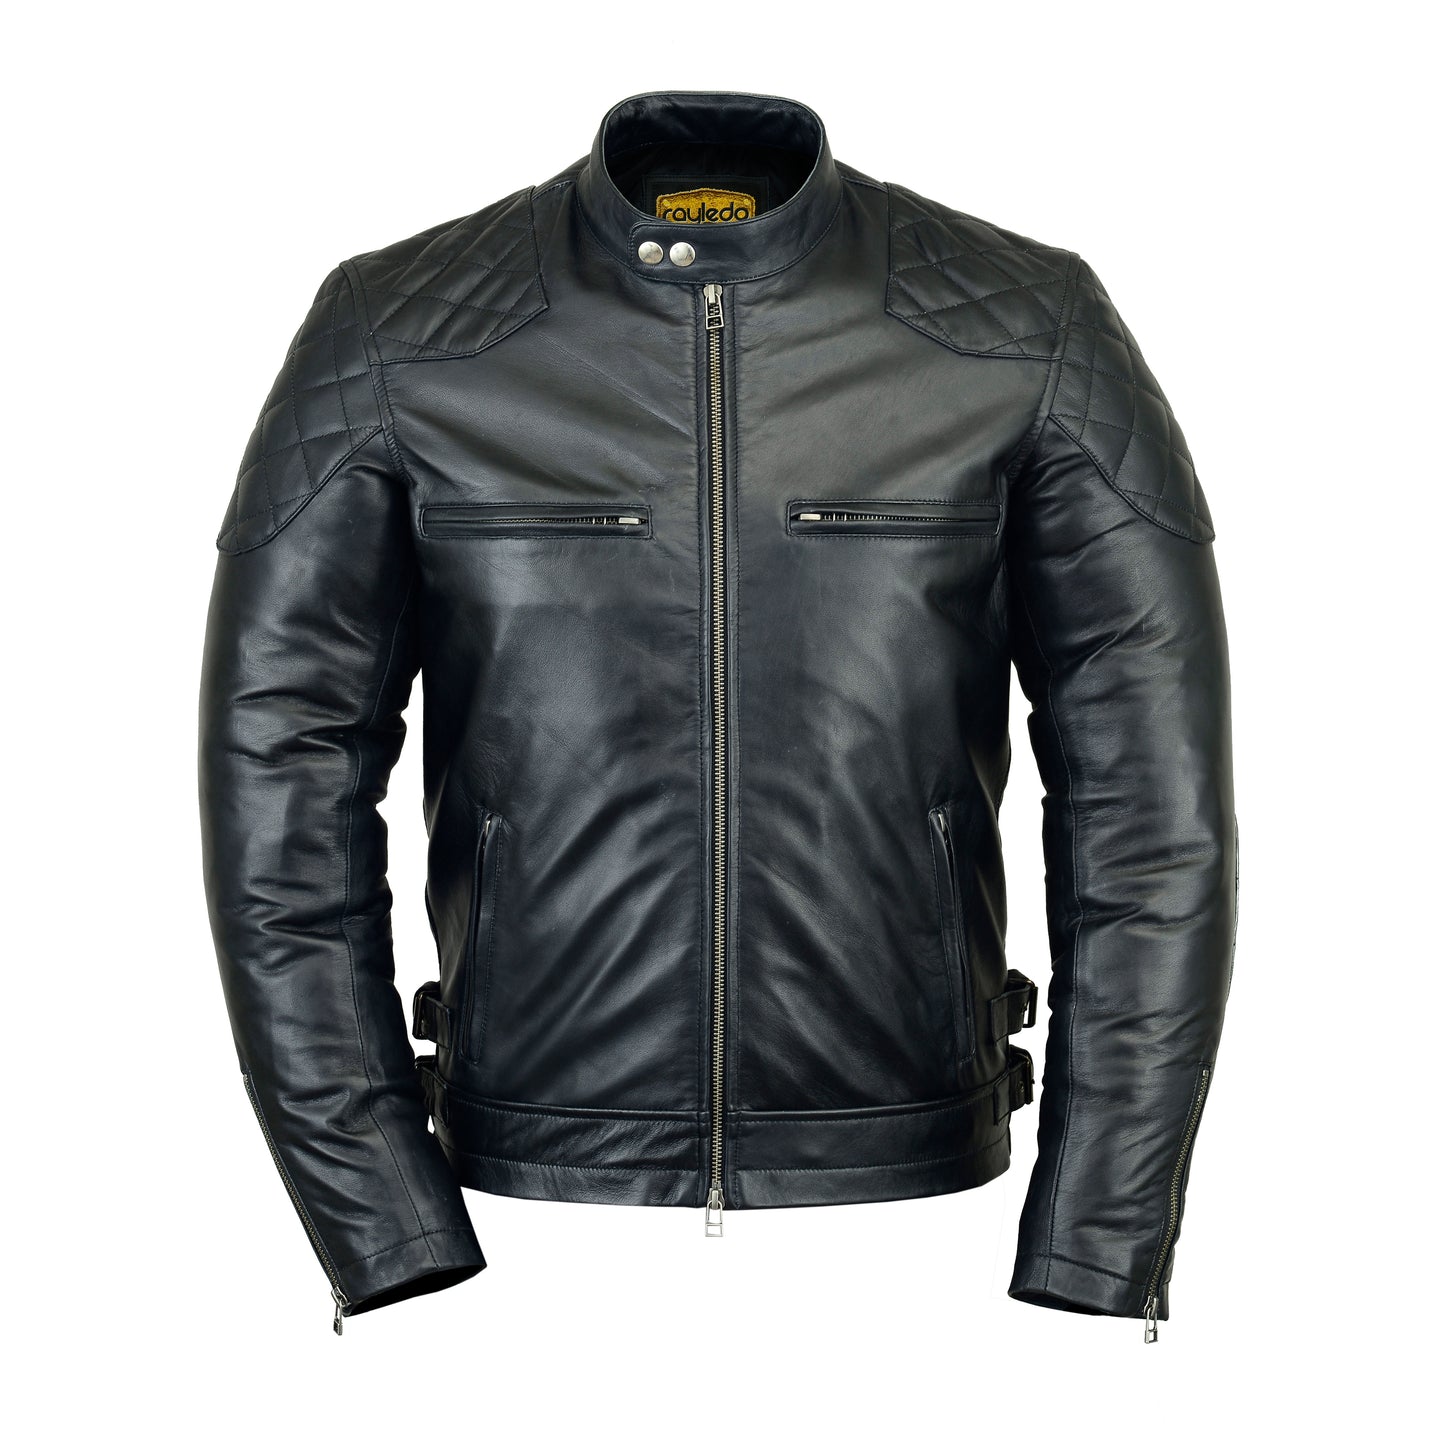 David Beckham Leather Jacket Impressive BikerWear 2